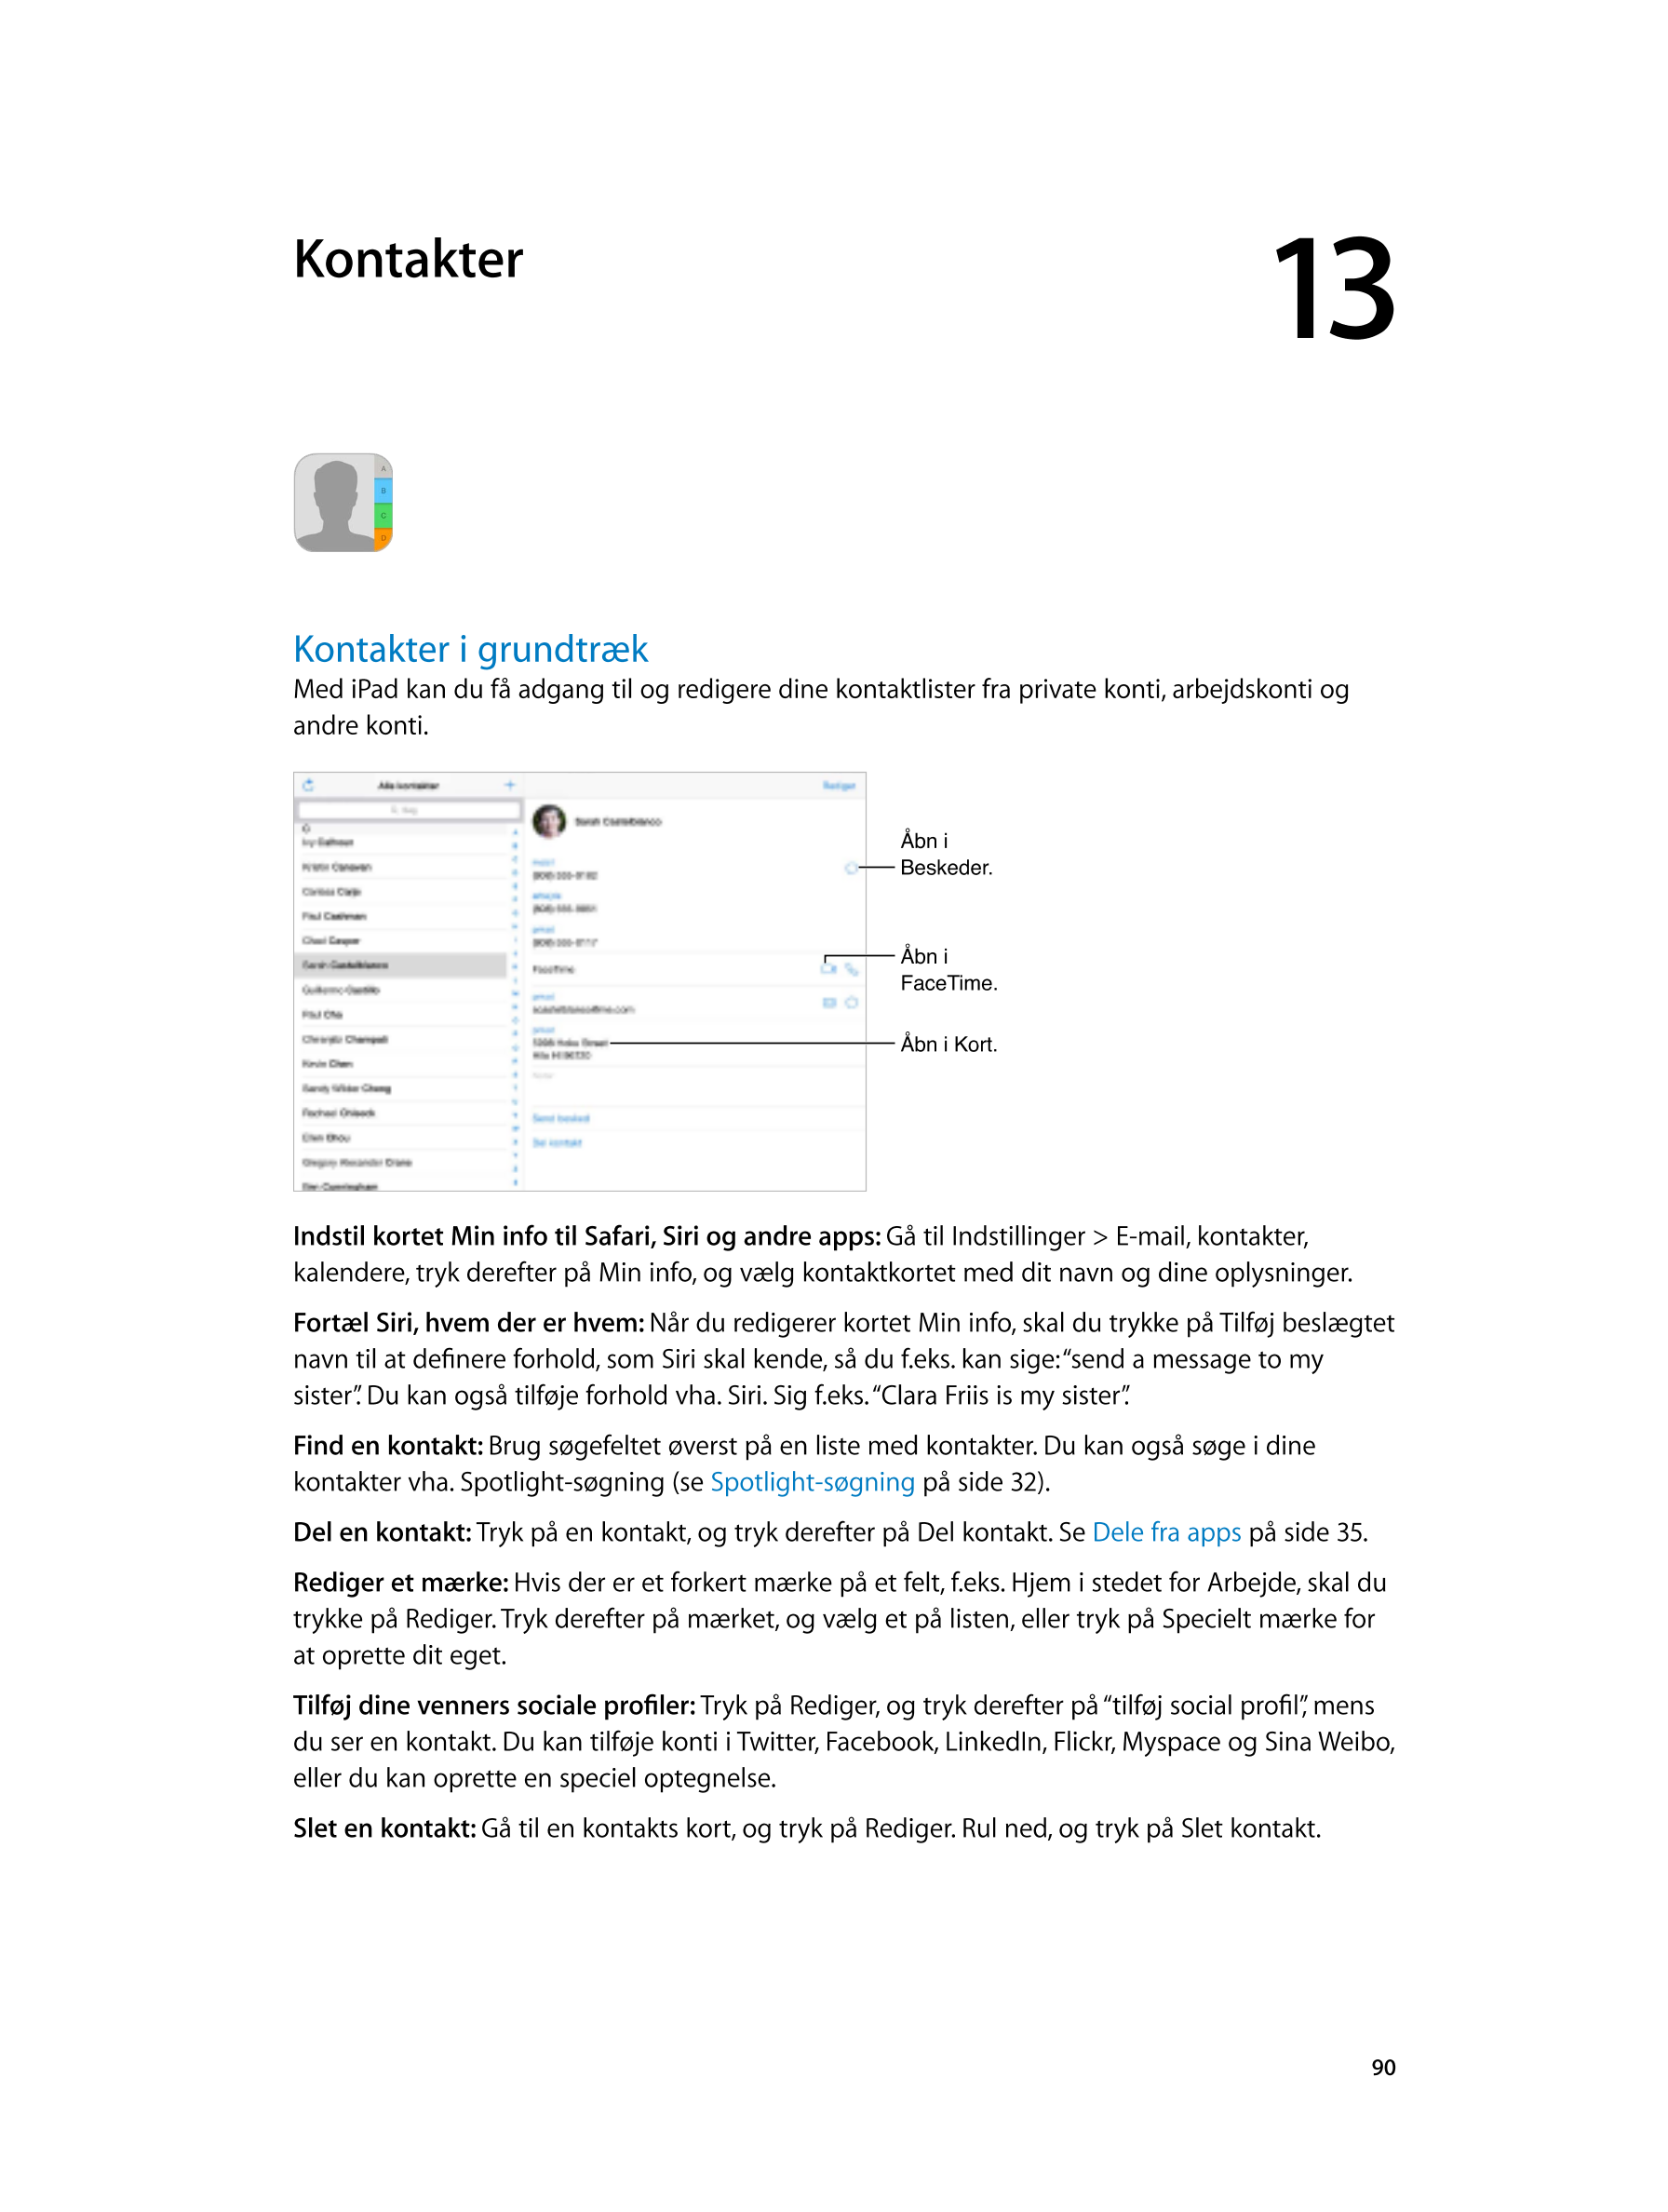   Kontakter 13         
Kontakter i grundtræk
Med iPad kan du få adgang til og redigere dine kontaktlister fra private konti, ar